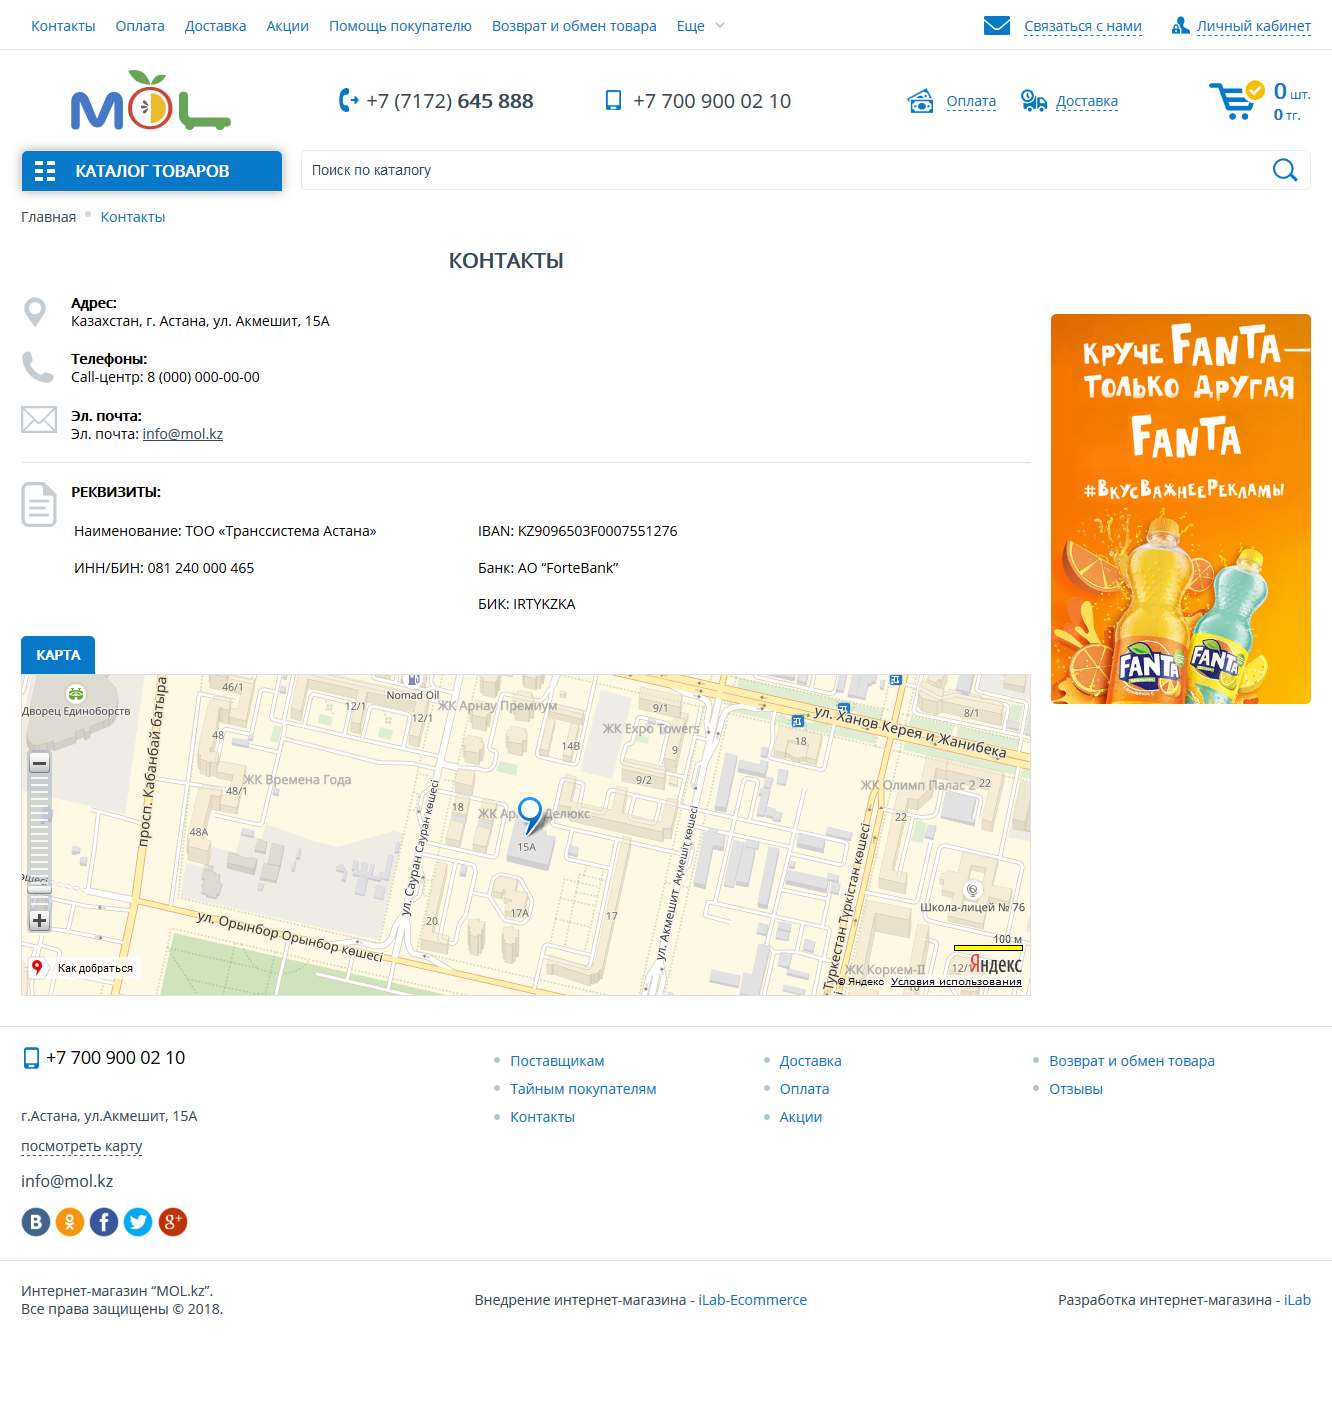 интернет-магазин продуктов питания mol.kz